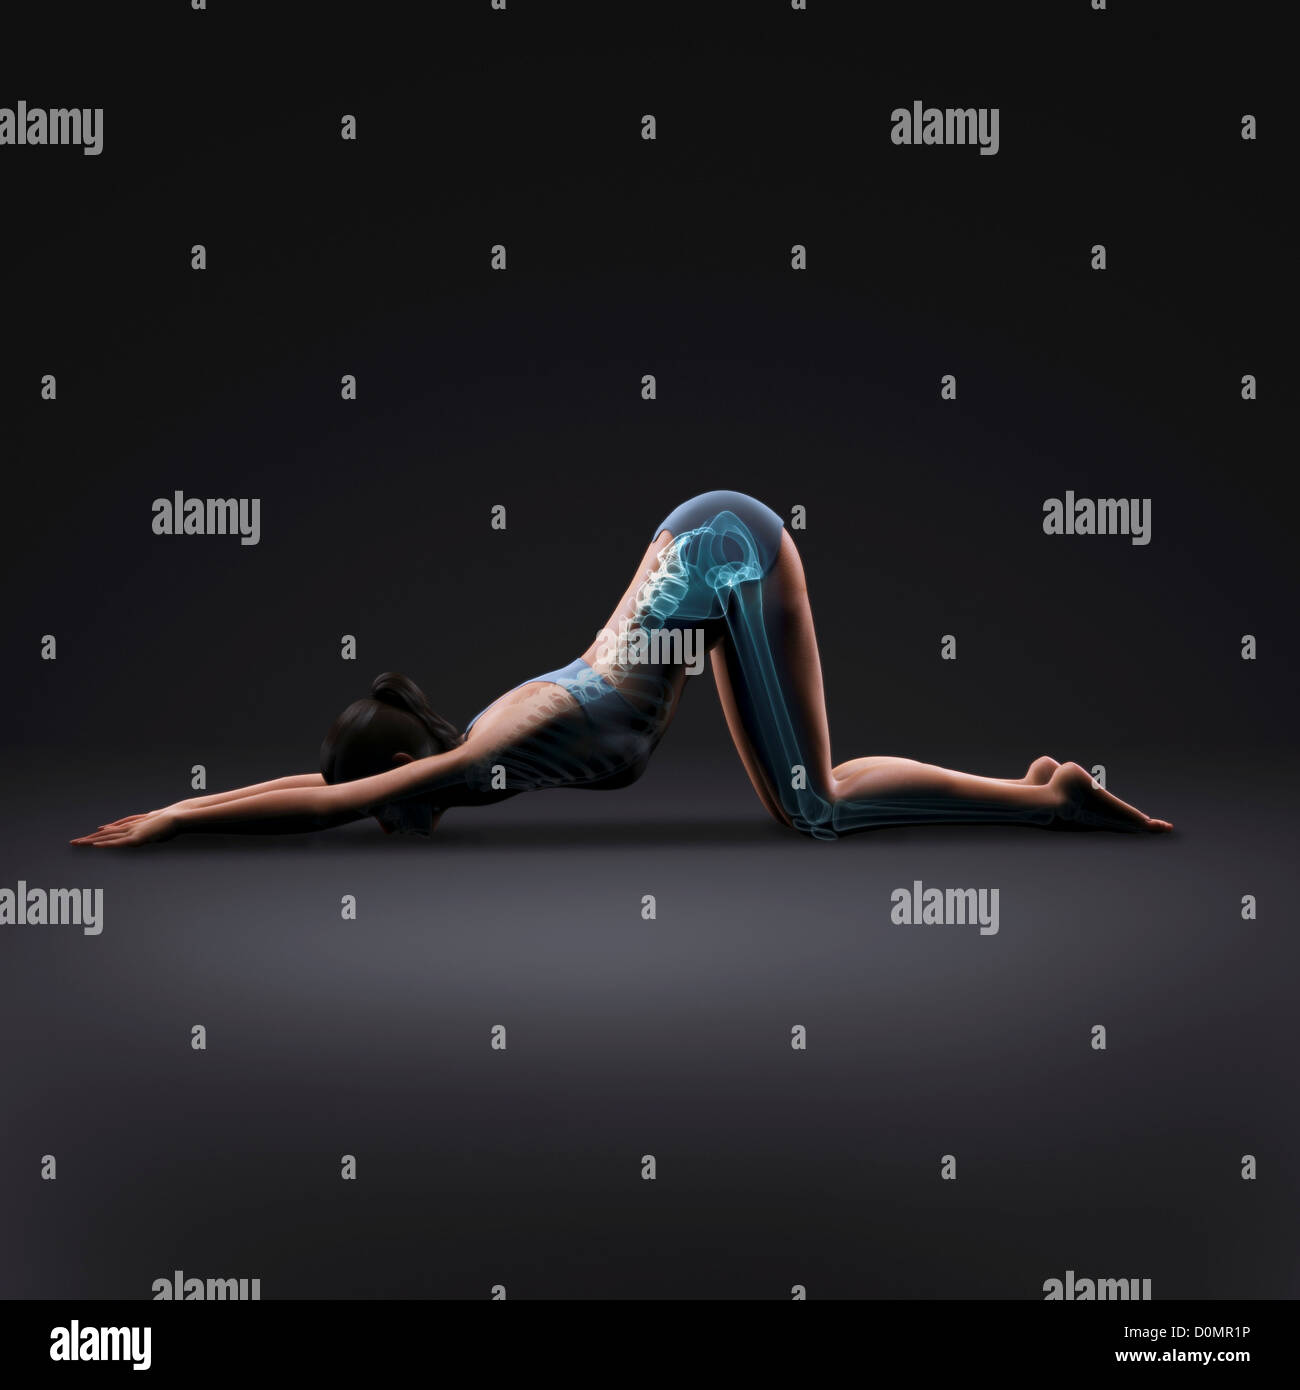 Skelett über einen weiblichen Körper in erweiterten Welpen Pose zeigt die Skelette Ausrichtung von diesem bestimmten Yogastellung geschichtet. Stockfoto